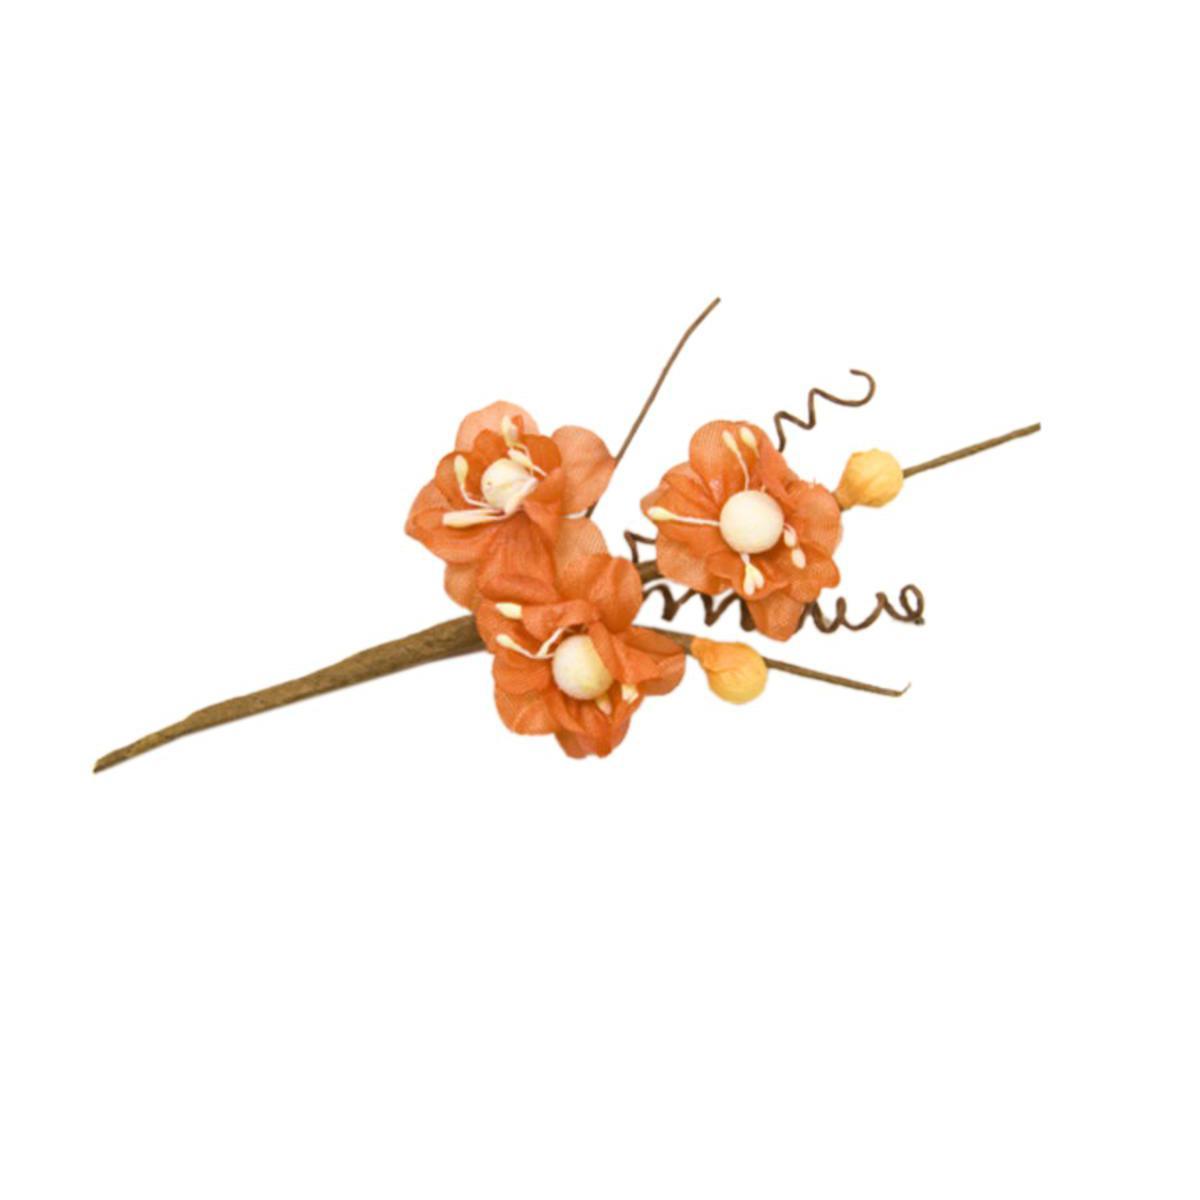 6 tiges avec fleurs de pêcher - 10 cm - Polyester - Orange